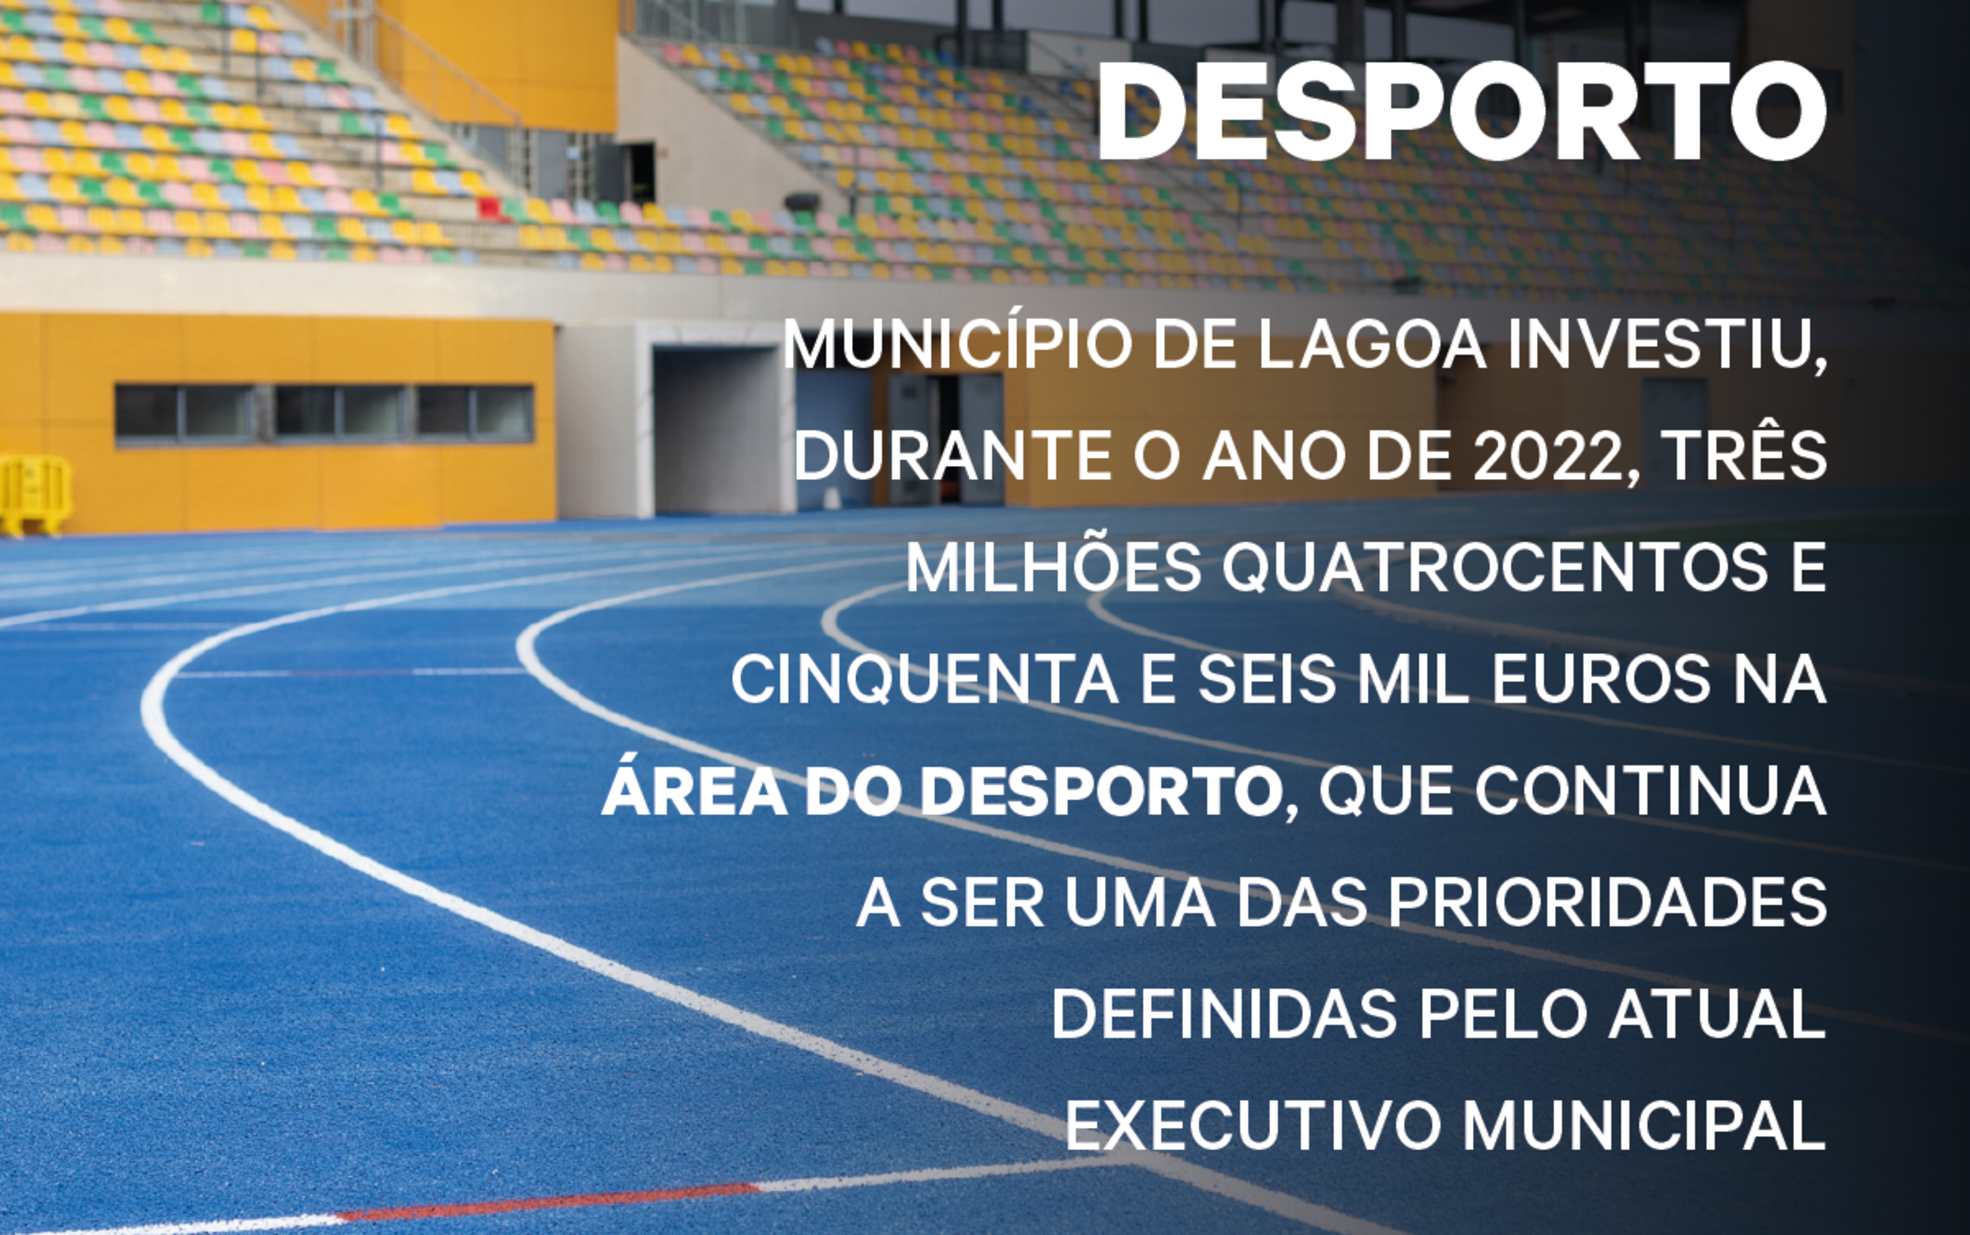 Lagoa investiu cerca de 3,5 milhões no Desporto em 2022